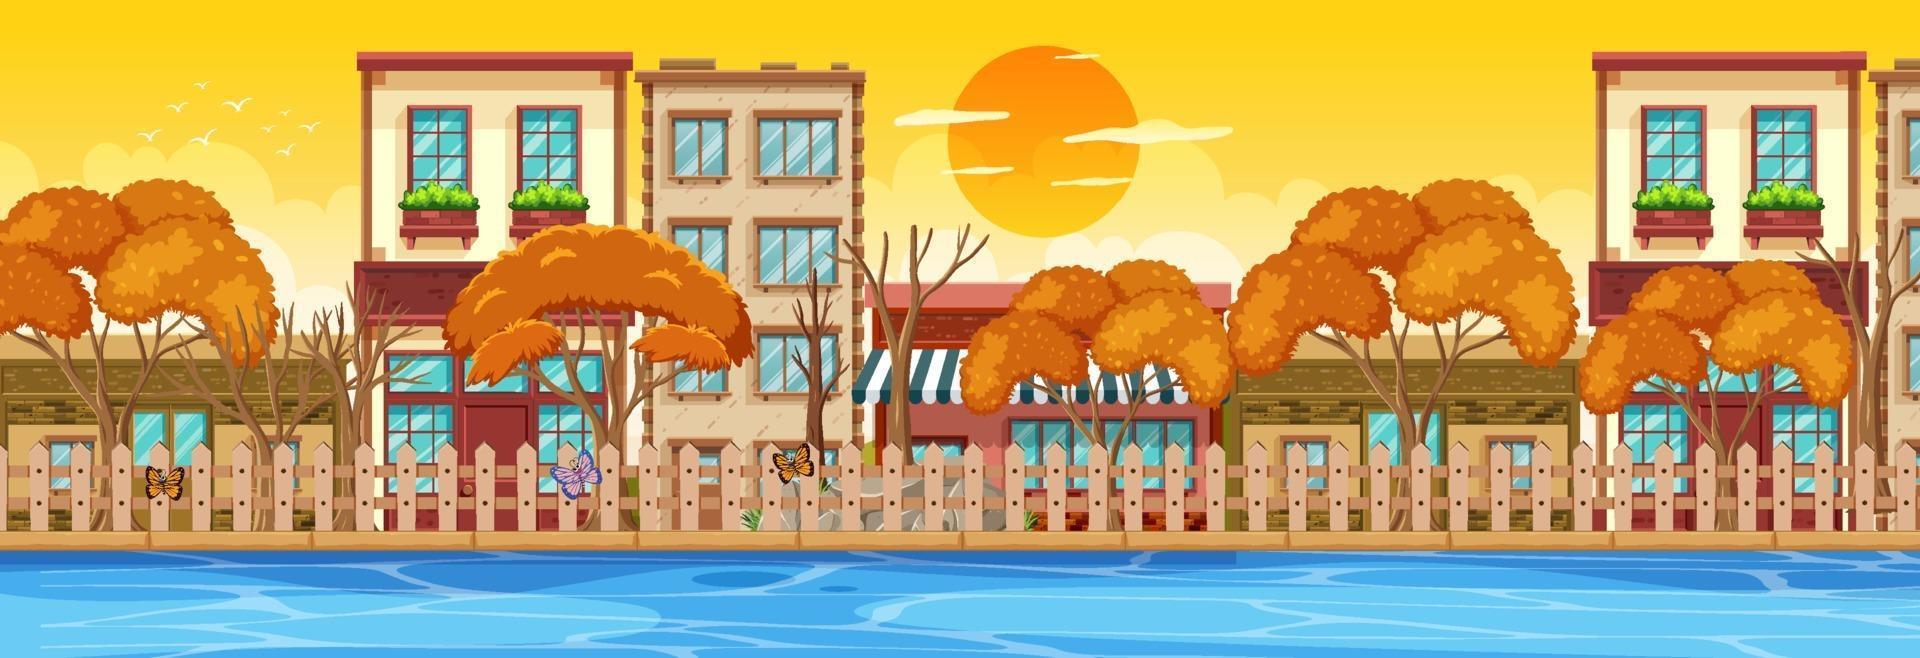 muitos edifícios ao longo da cena horizontal do rio na hora do pôr do sol vetor